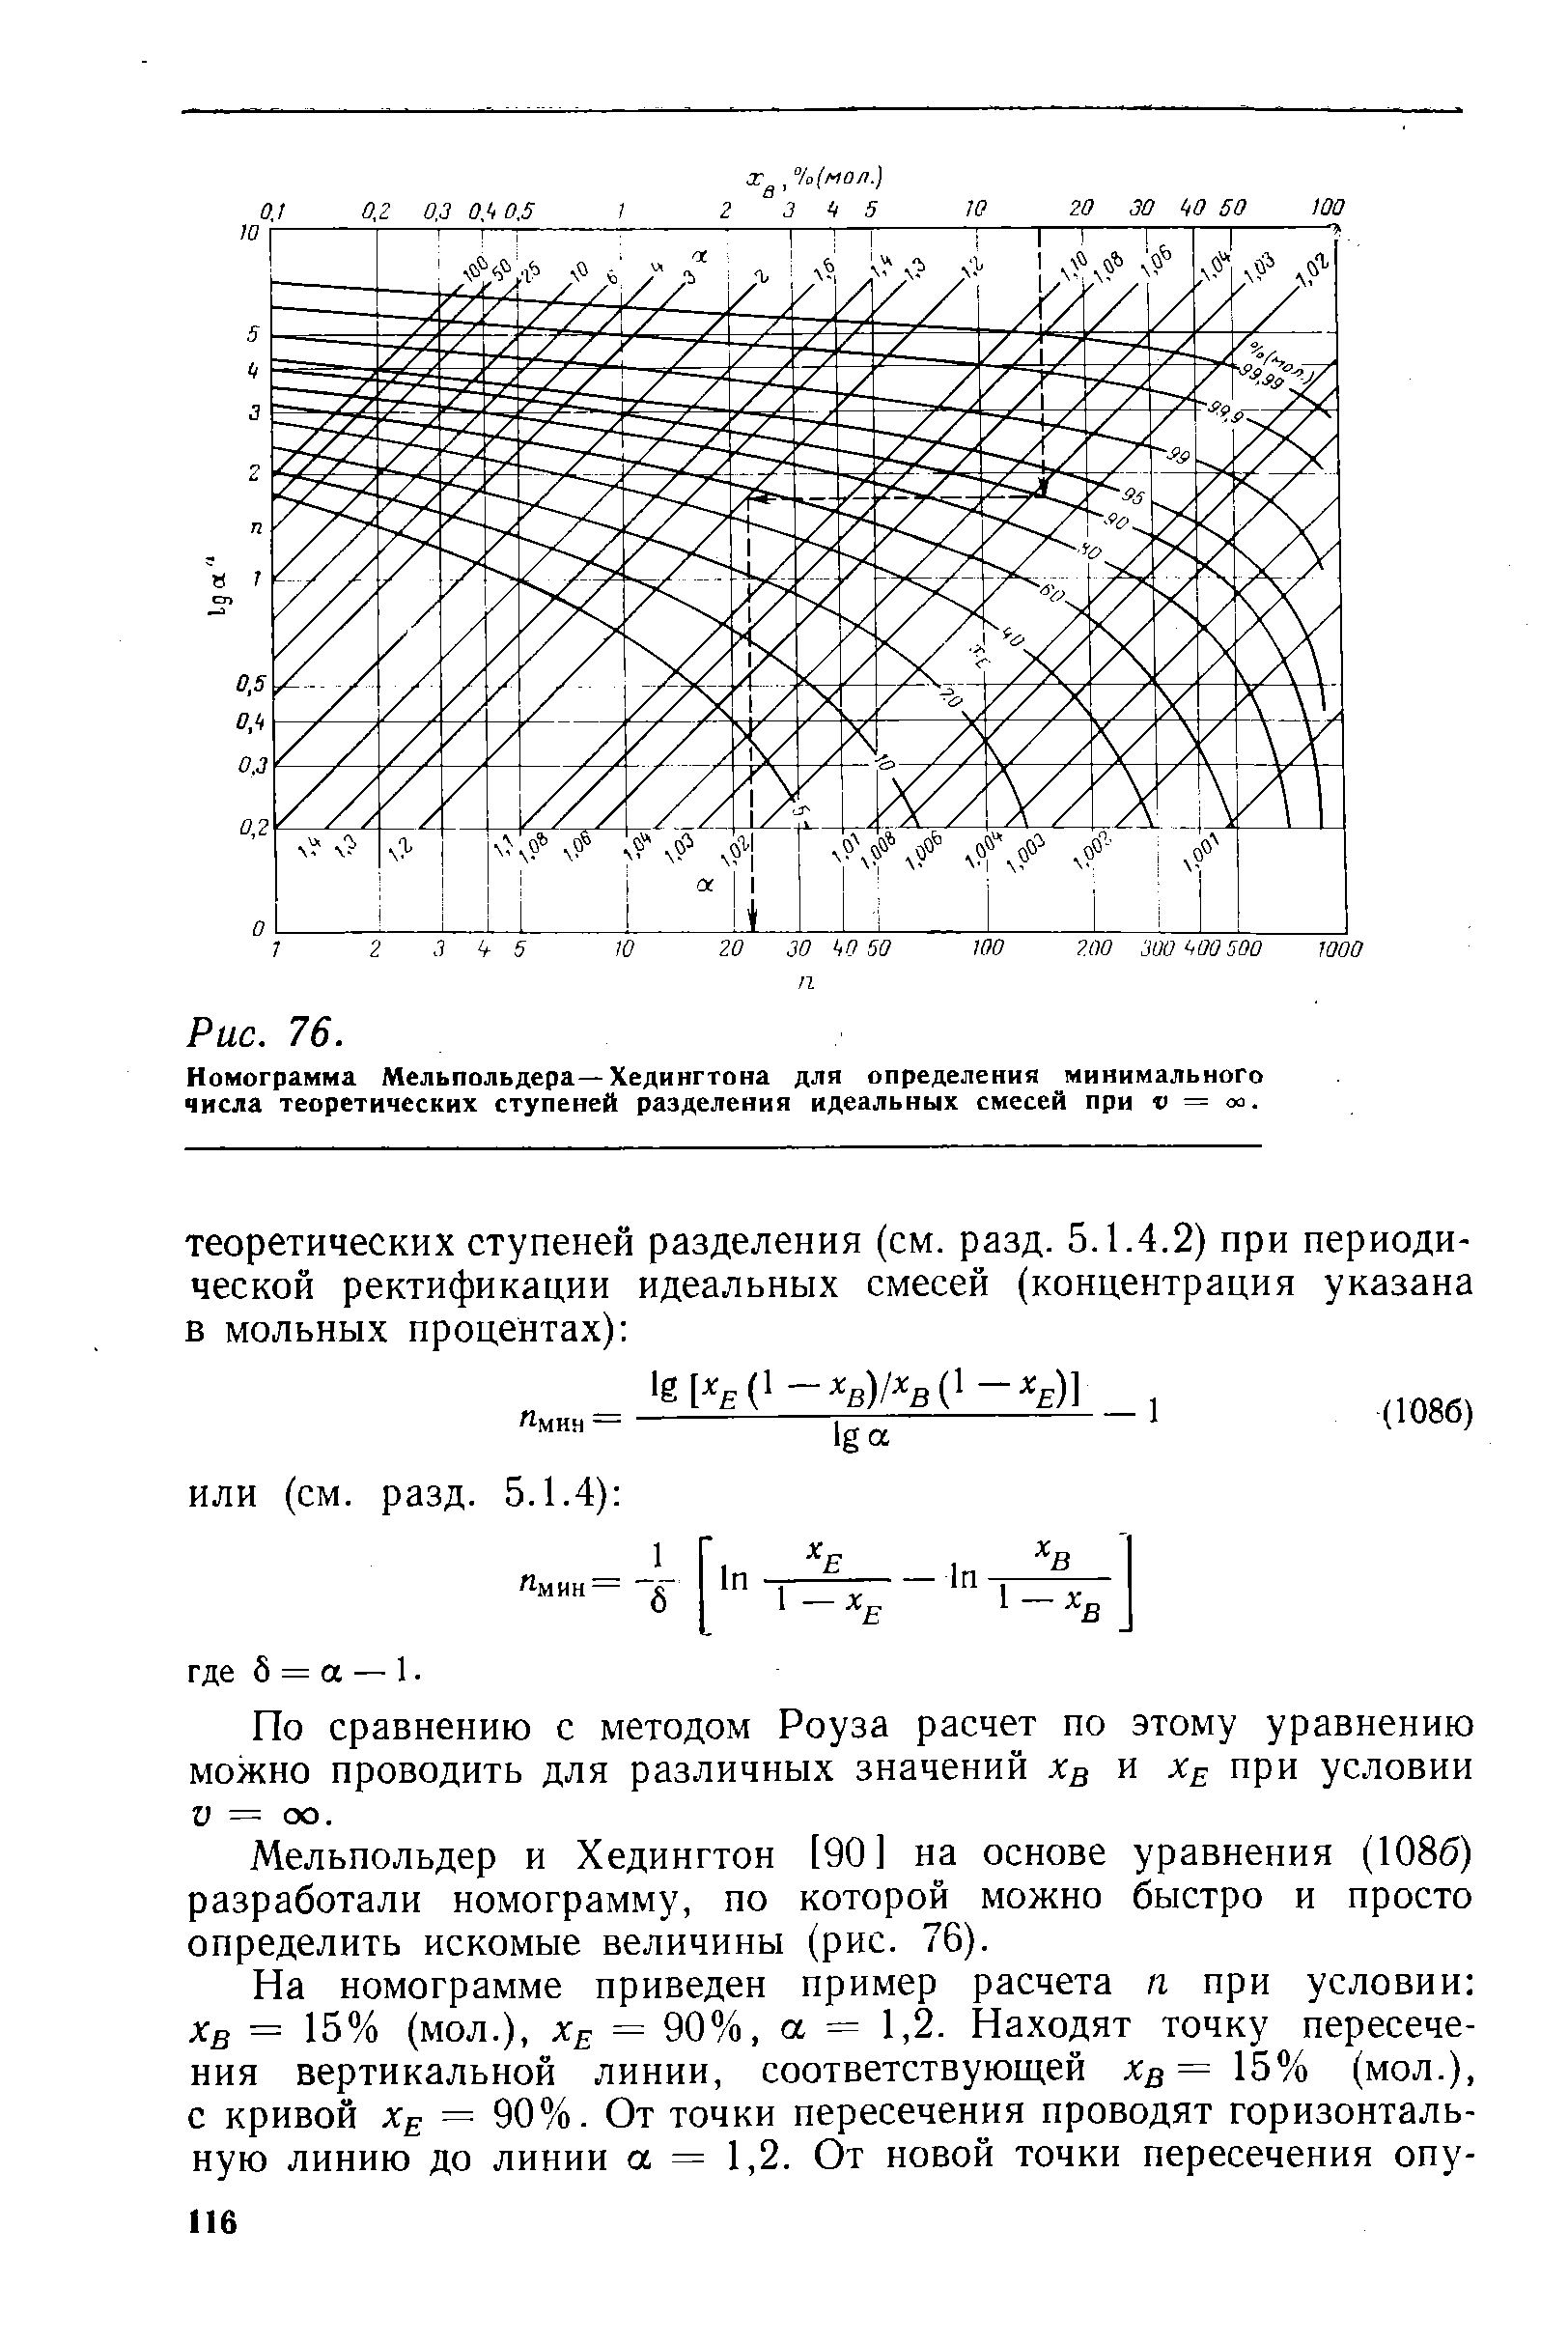 Мельпольдер и Хедингтон [90] на основе уравнения (1086) разработали номограмму, по которой можно быстро и просто определить искомые величины (рис. 76).